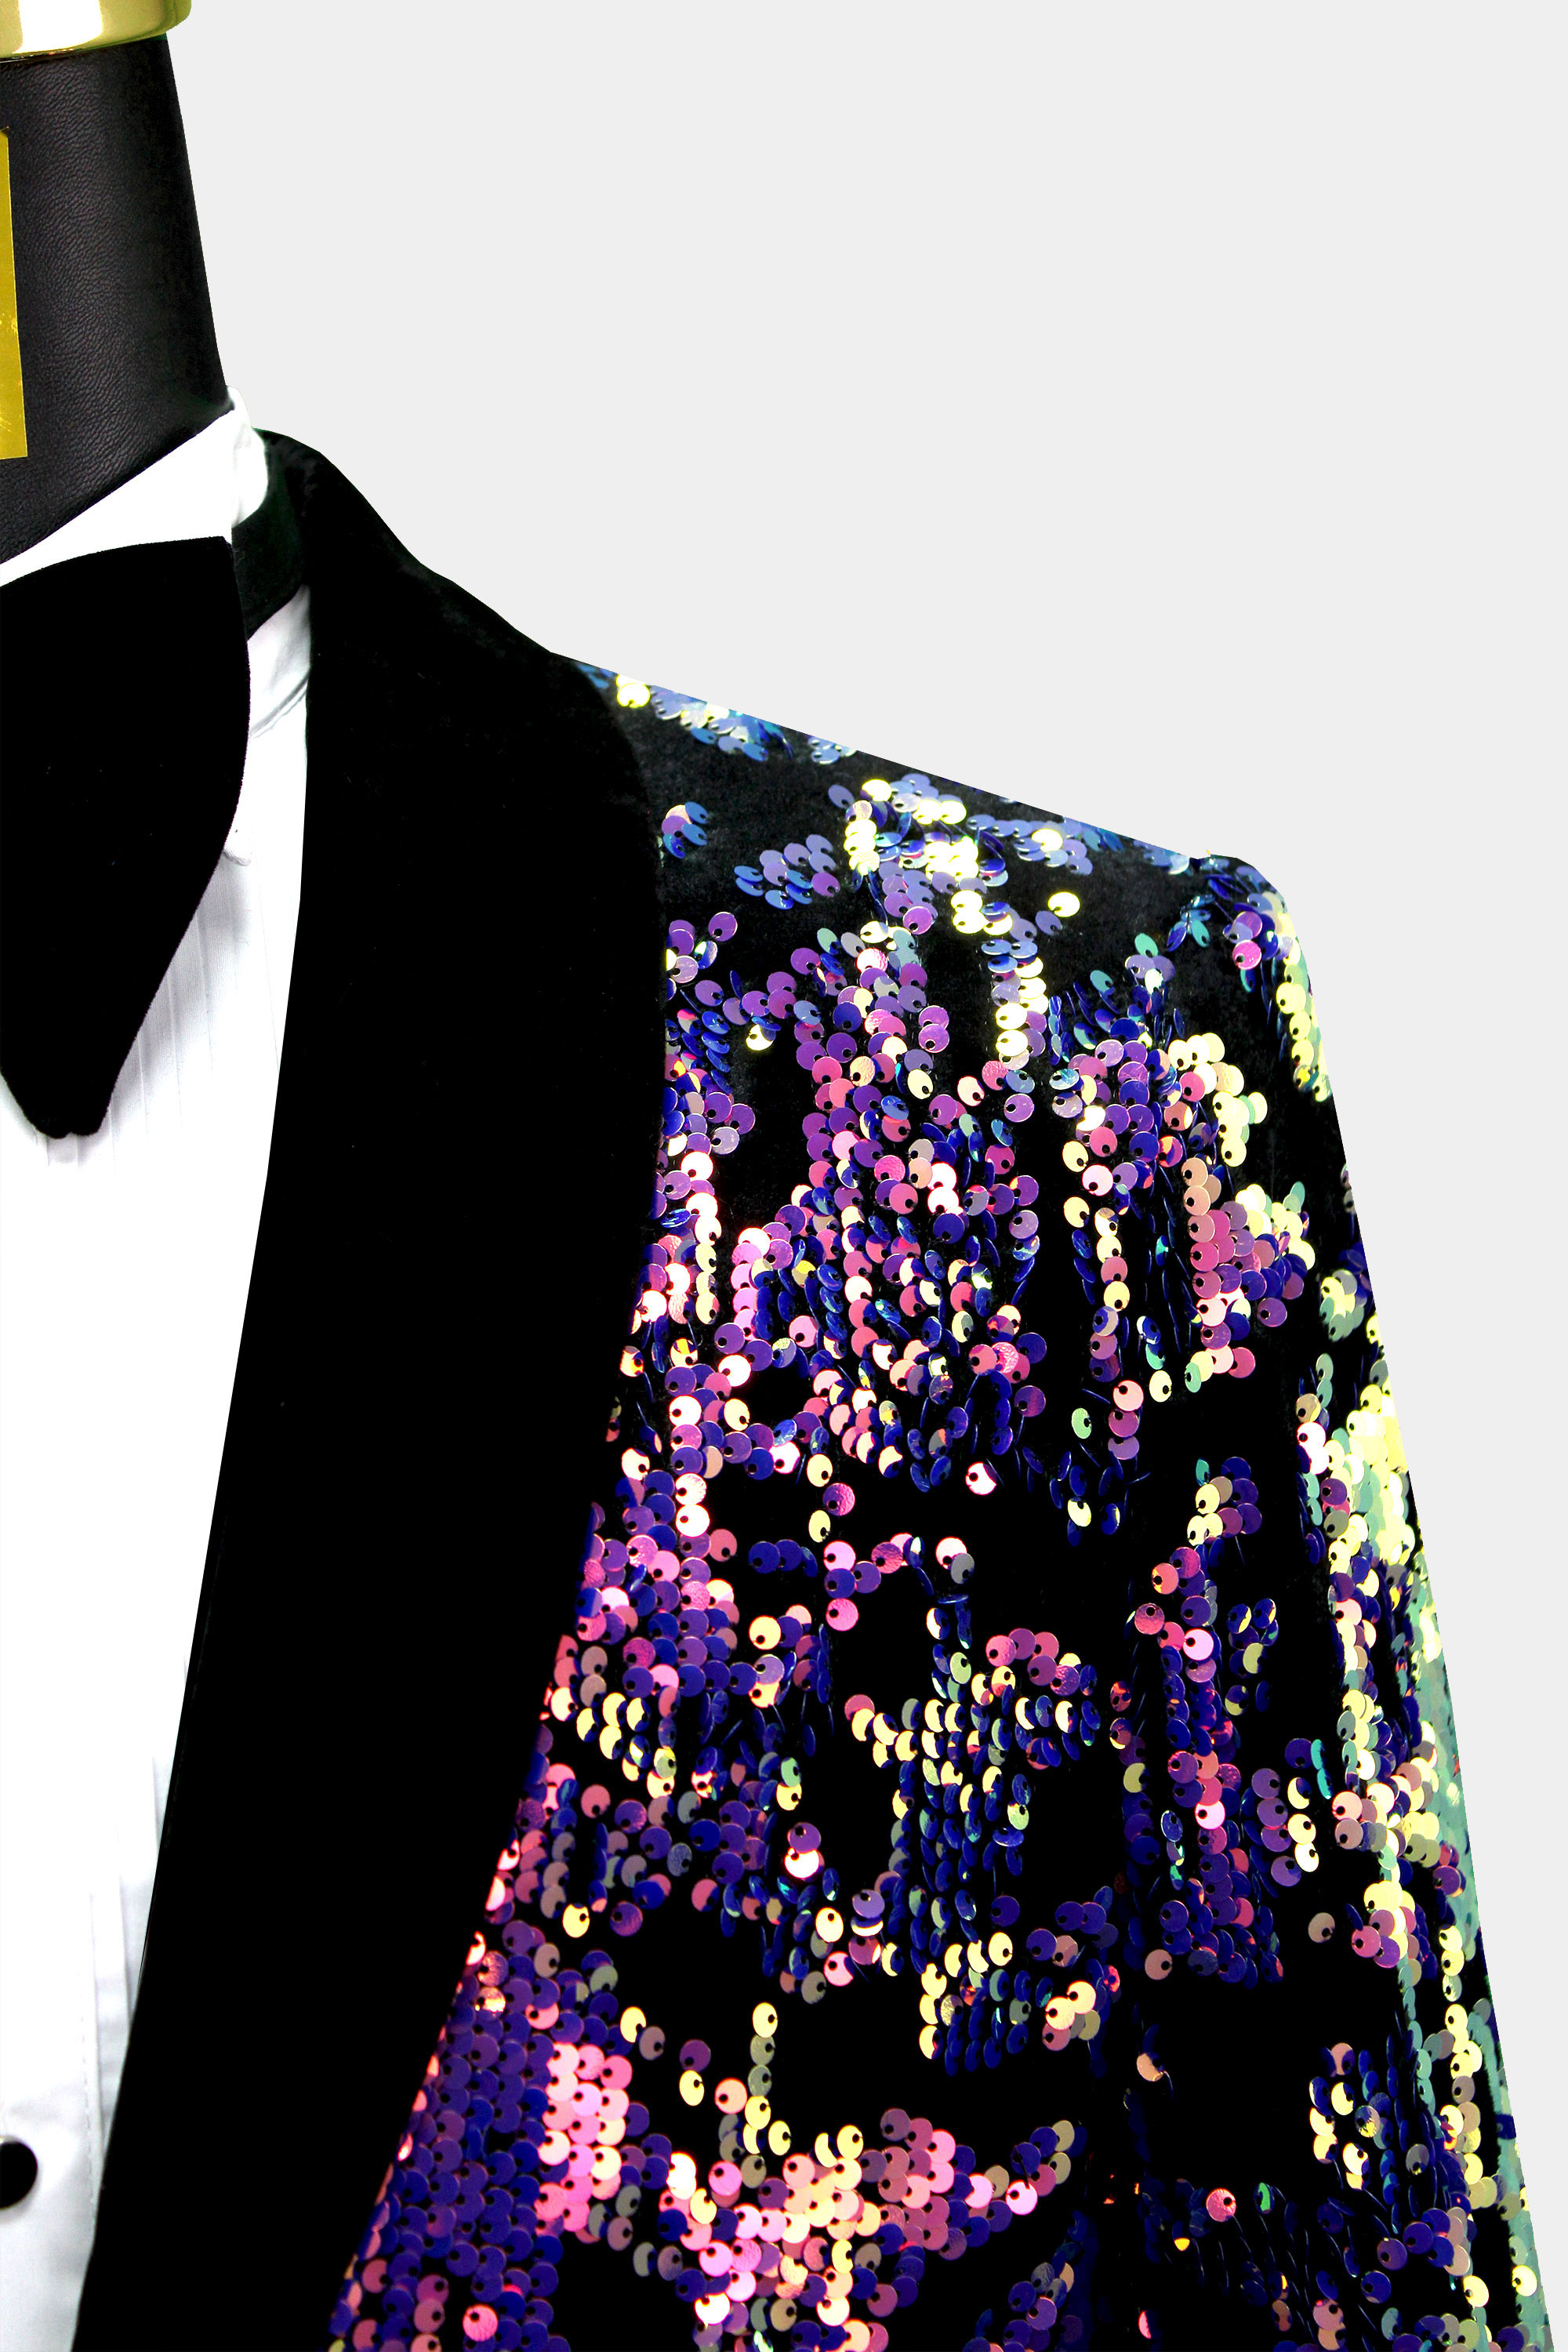 Colorful-Jacket-Sequin-Suit-Blazer-for-Men-from-Gentlemansguru.com